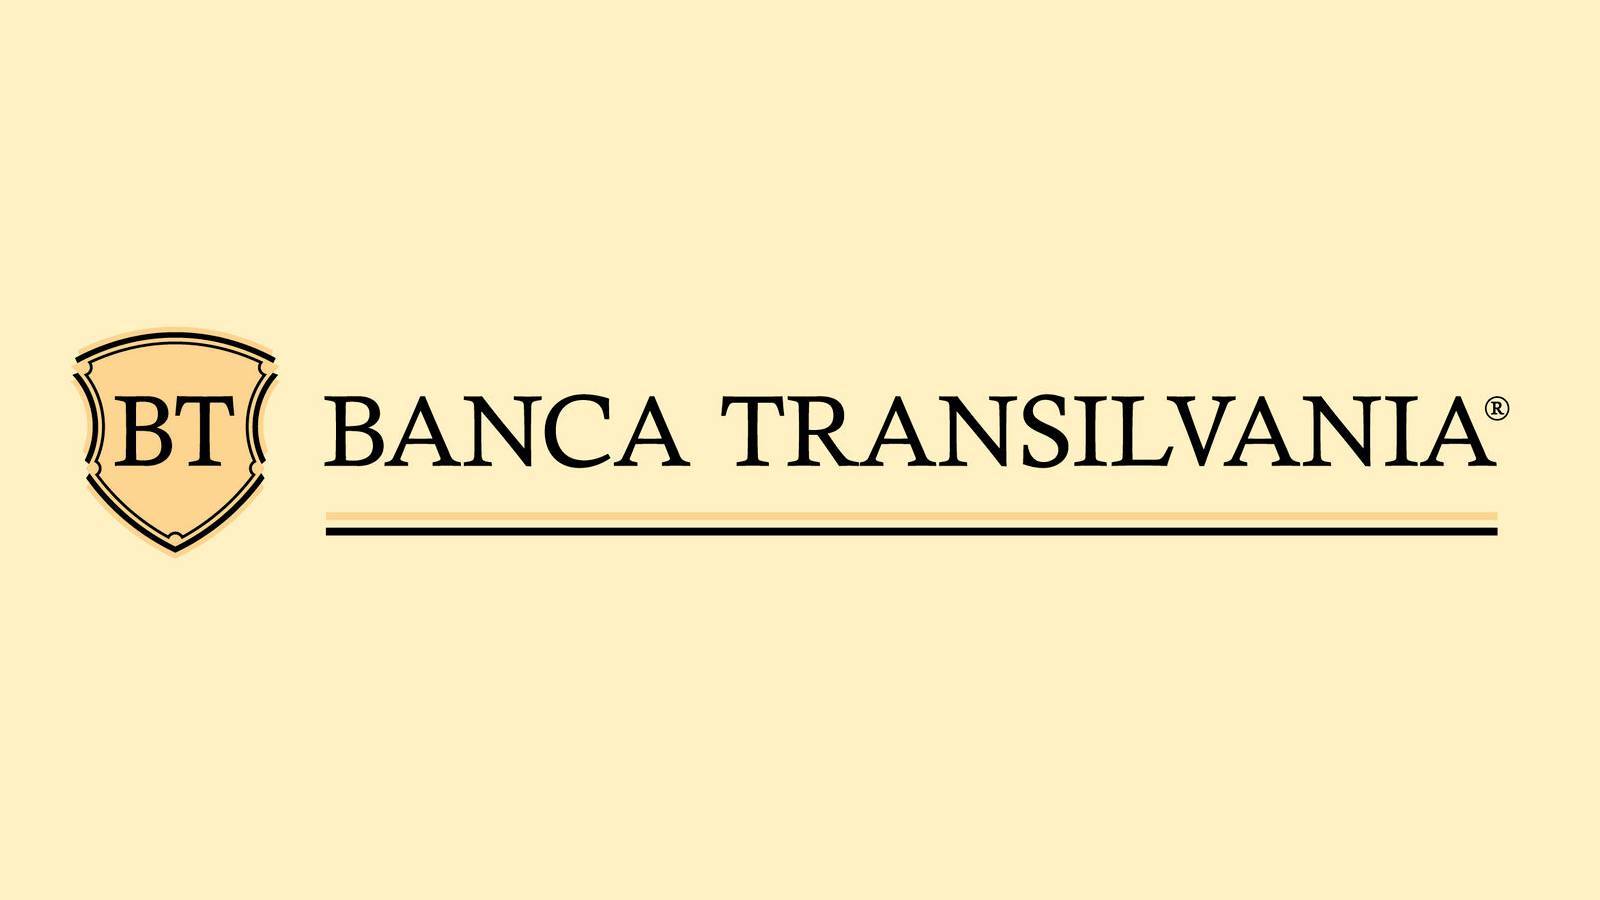 BANCA Transilvania WAŻNE Informacje przekazywane klientom, które musisz znać już dziś